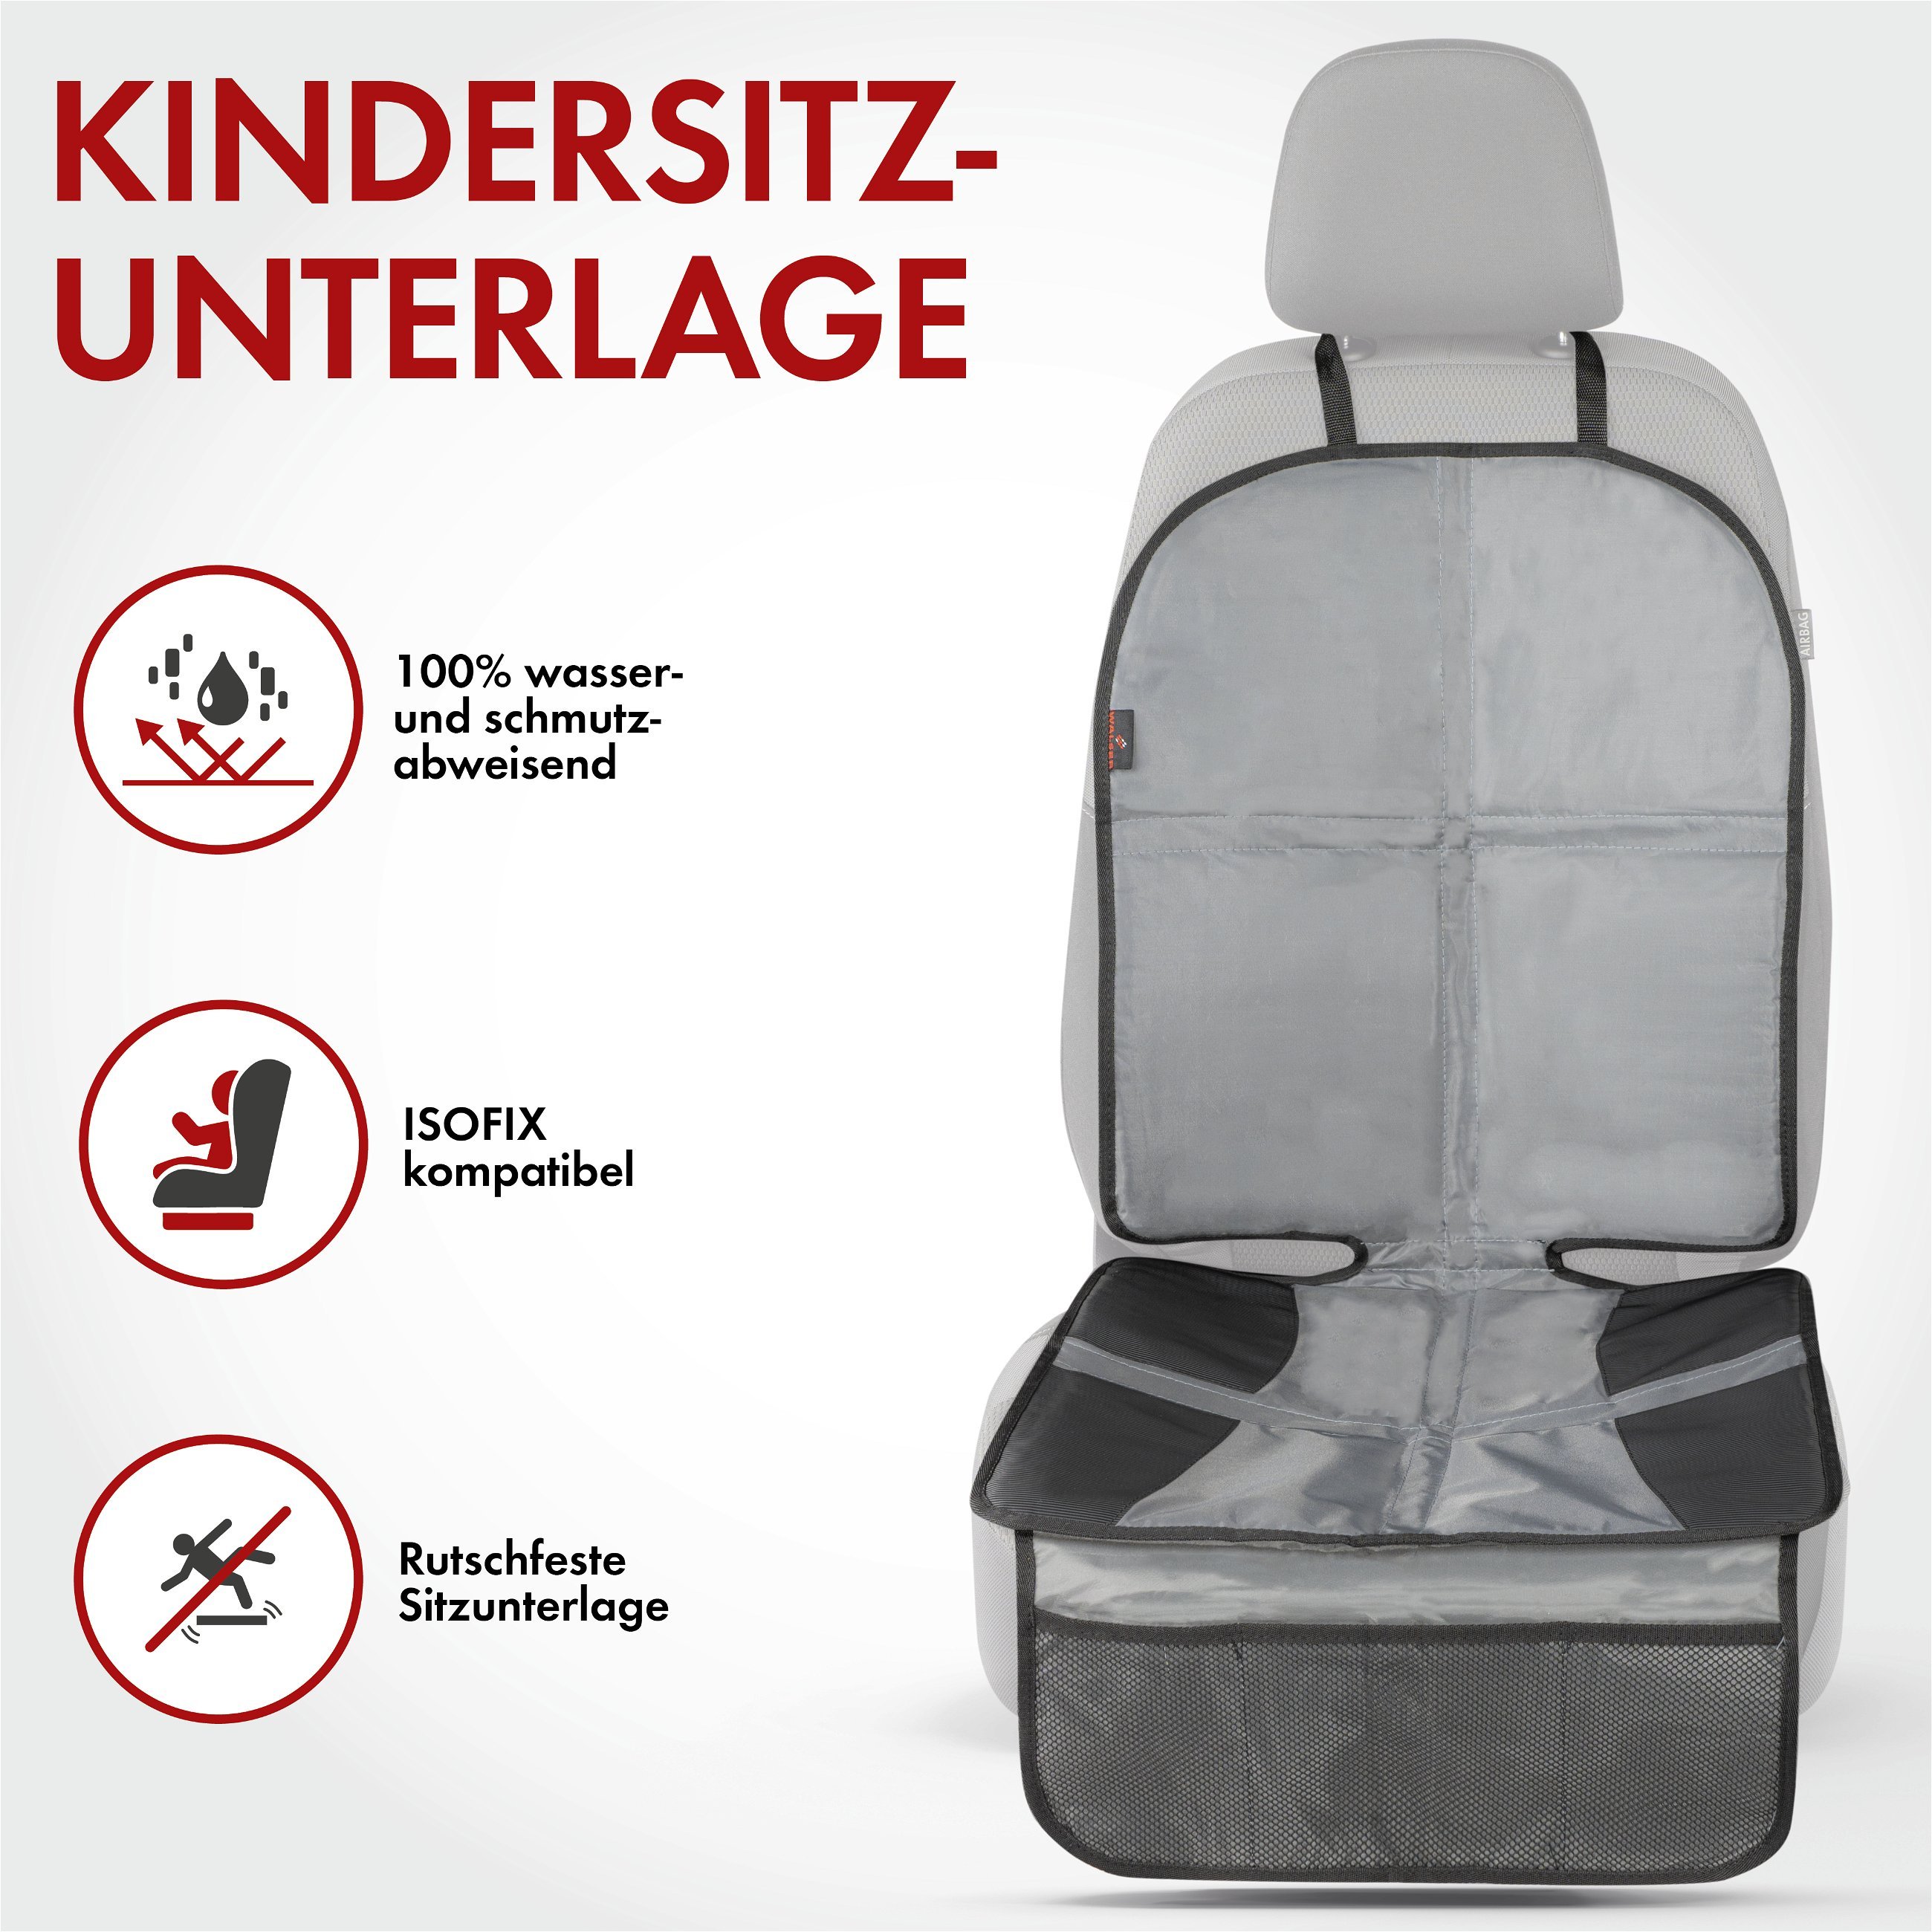 Kindersitzunterlage Tidy Fred XL, Auto-Schutzunterlage, Sitzschoner Kindersitz grau/schwarz